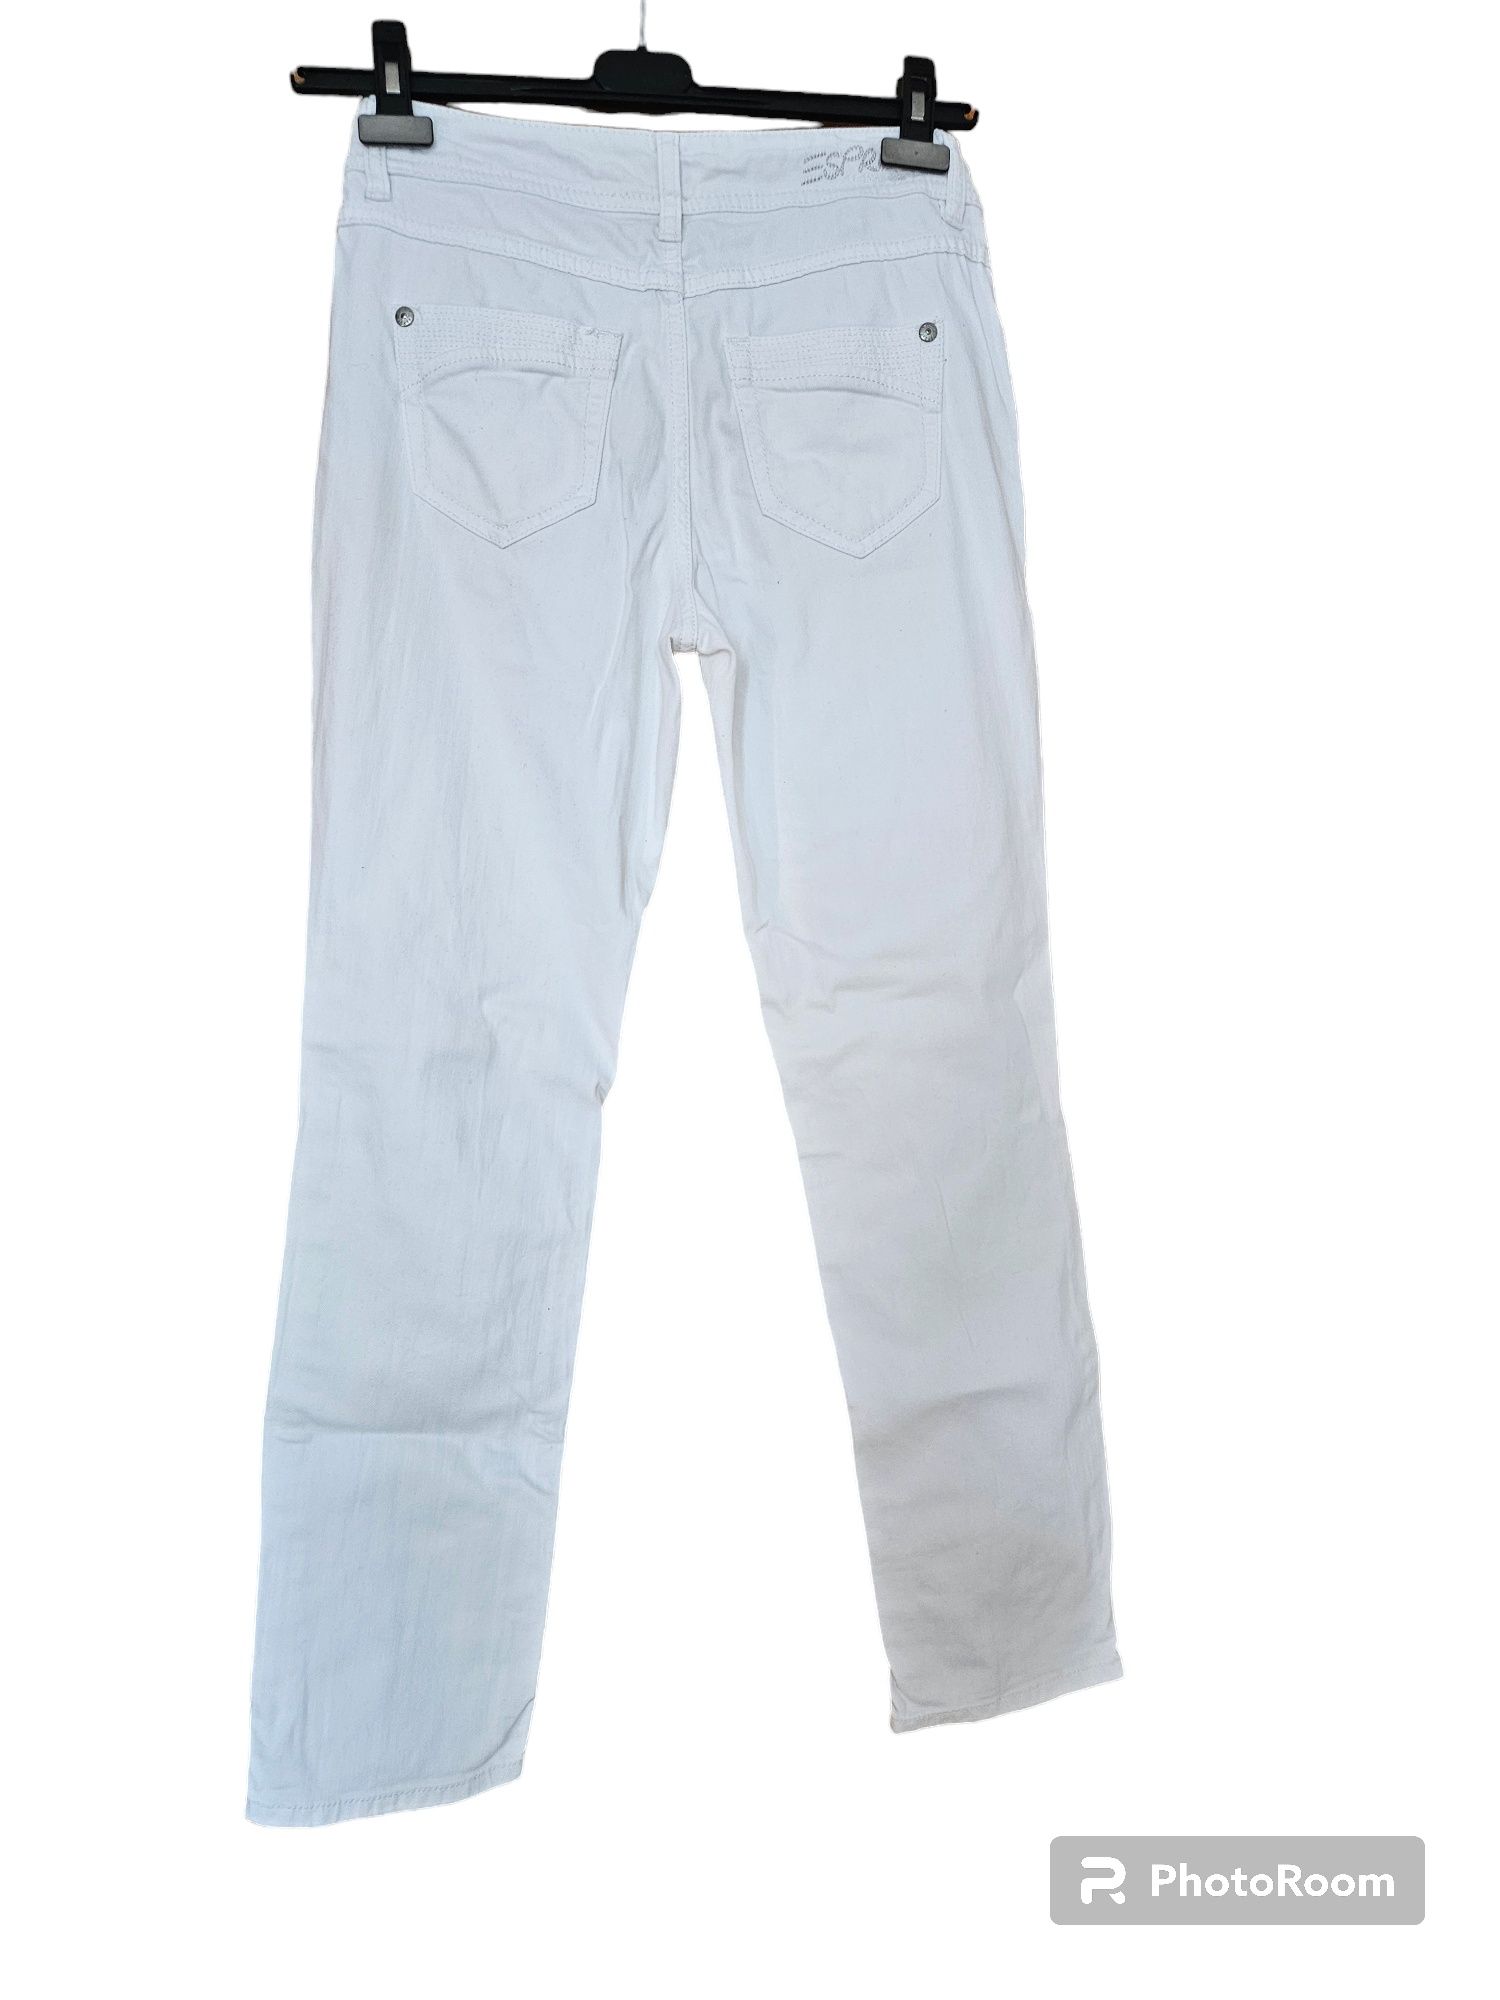 Pantaloni albi Esprit